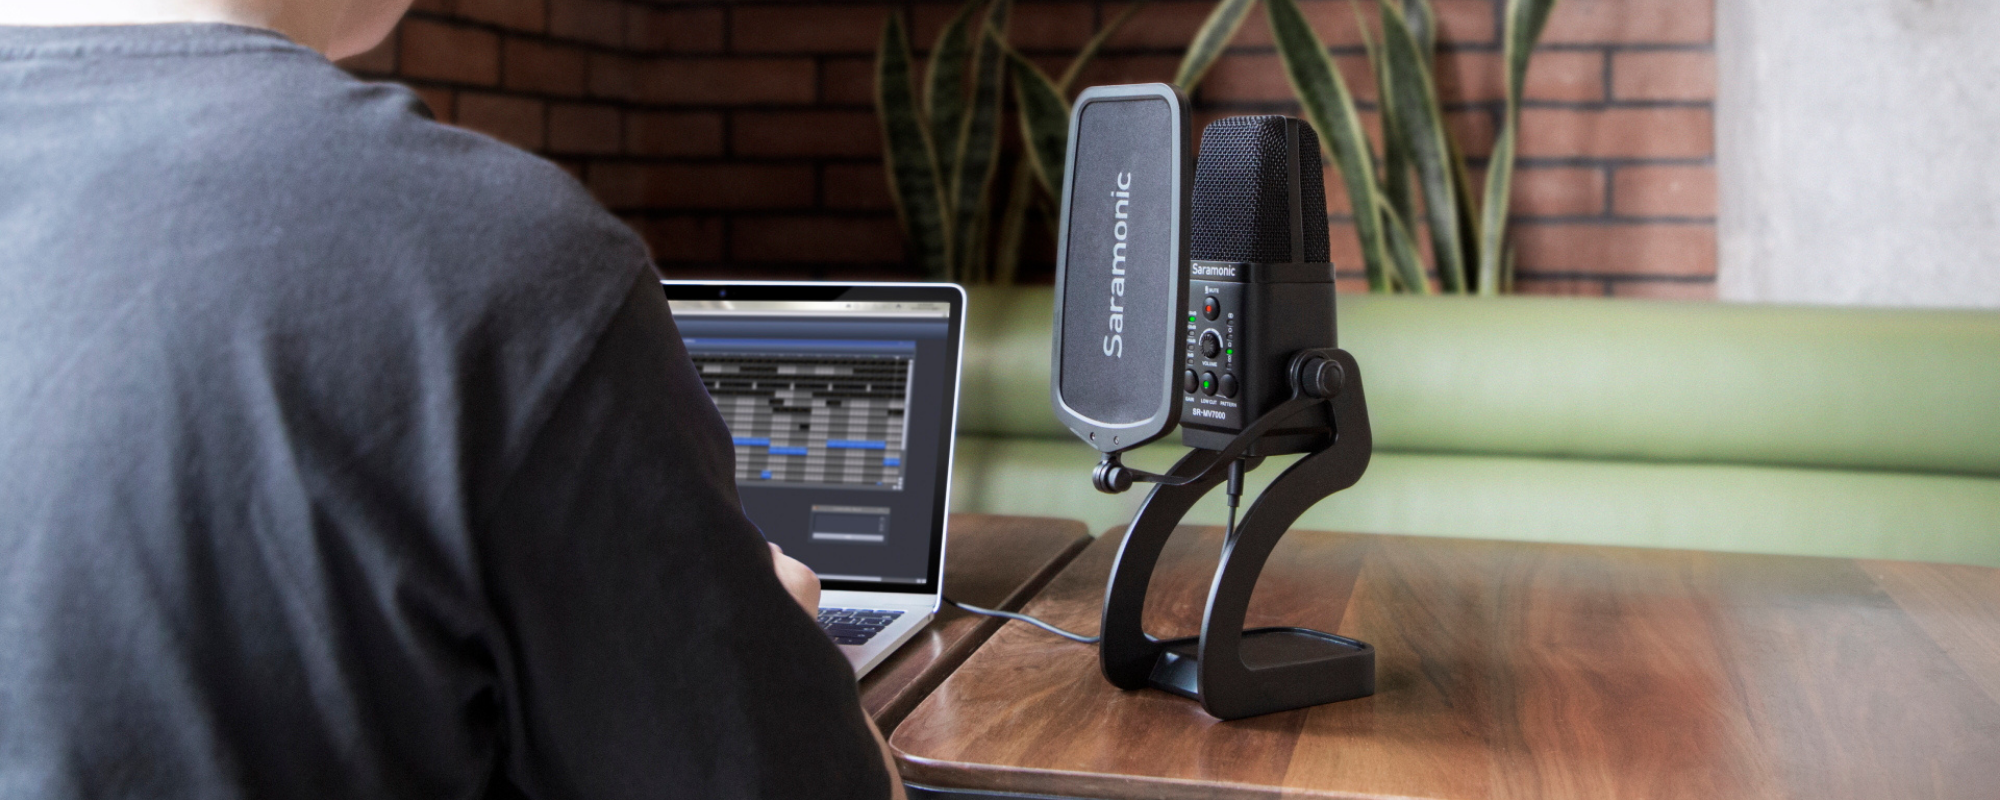 Mikrofon Saramonic SR-MV7000 ze złączem USB/XLR do podcastów